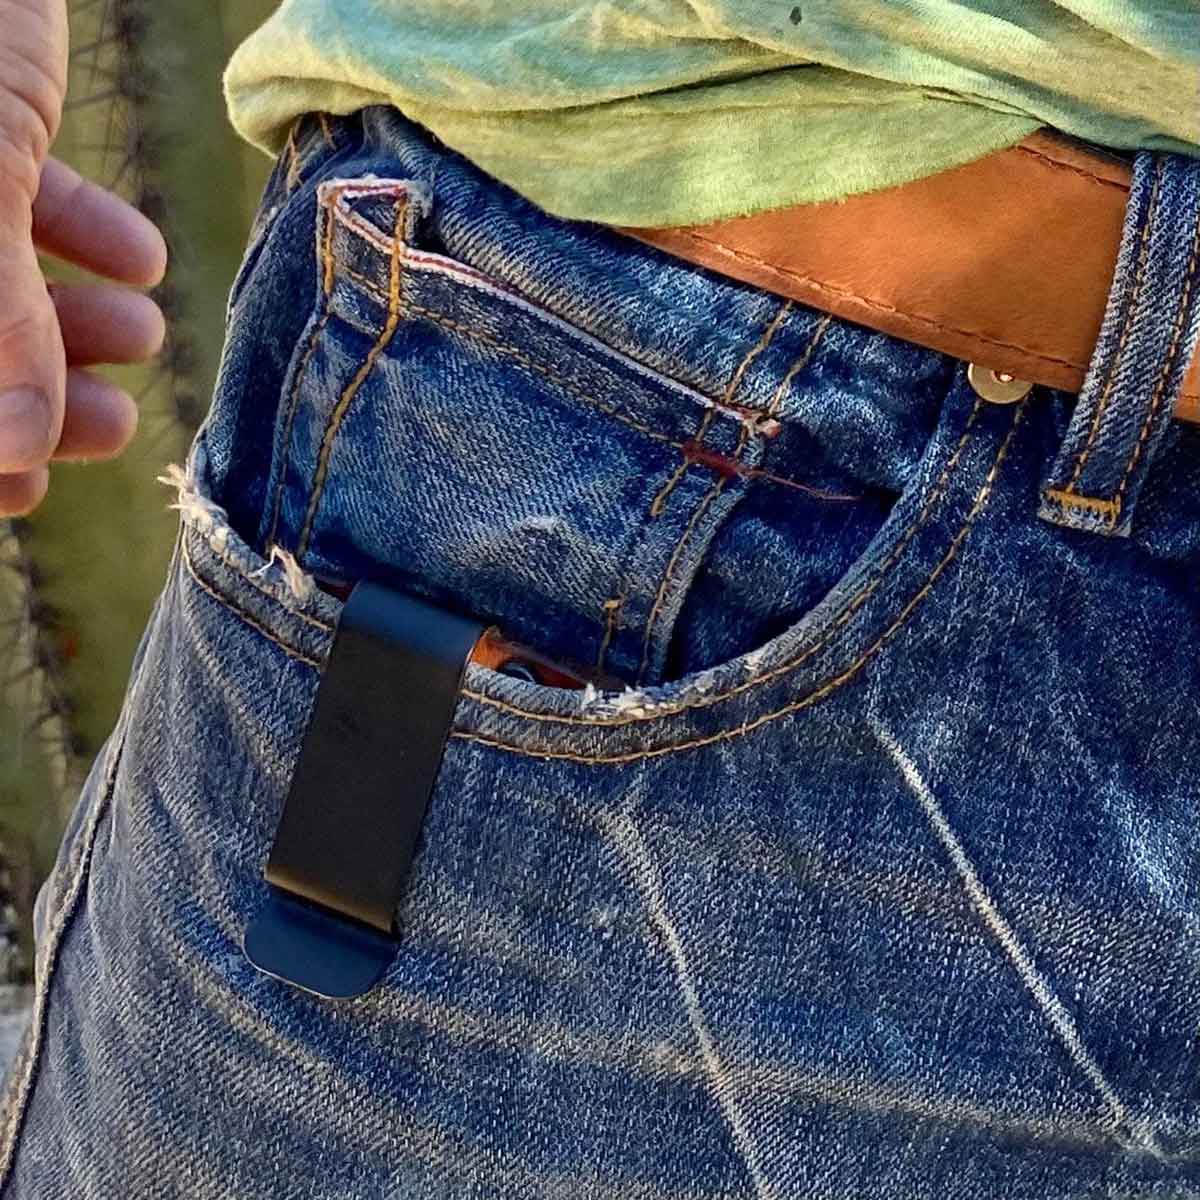 Minimalist wallet in pocket of blue jeans.